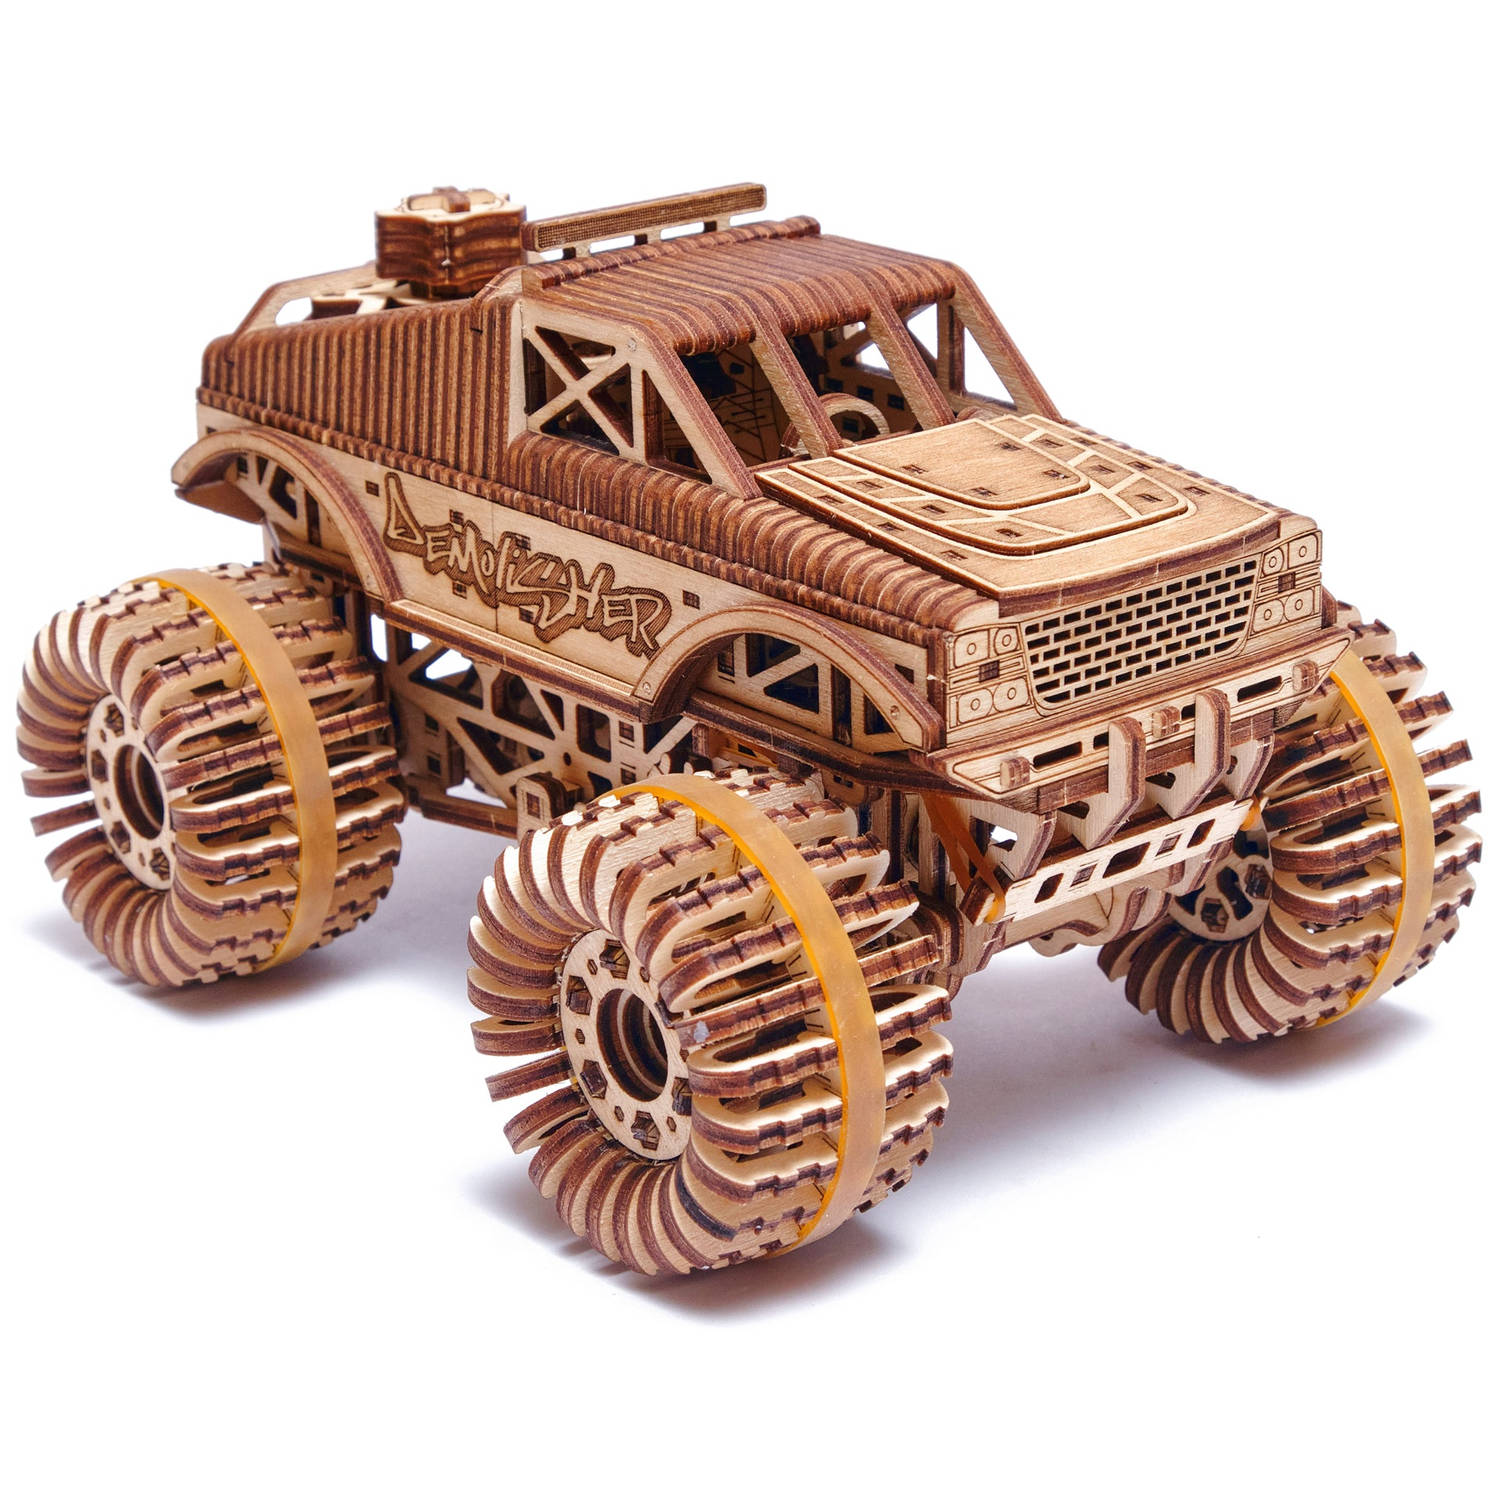 WoodTrick – Modelbouw 3D houten puzzel – ‘Monster truck' (WDTK015) – 556 stuks - Geen lijm noch verf nodig!